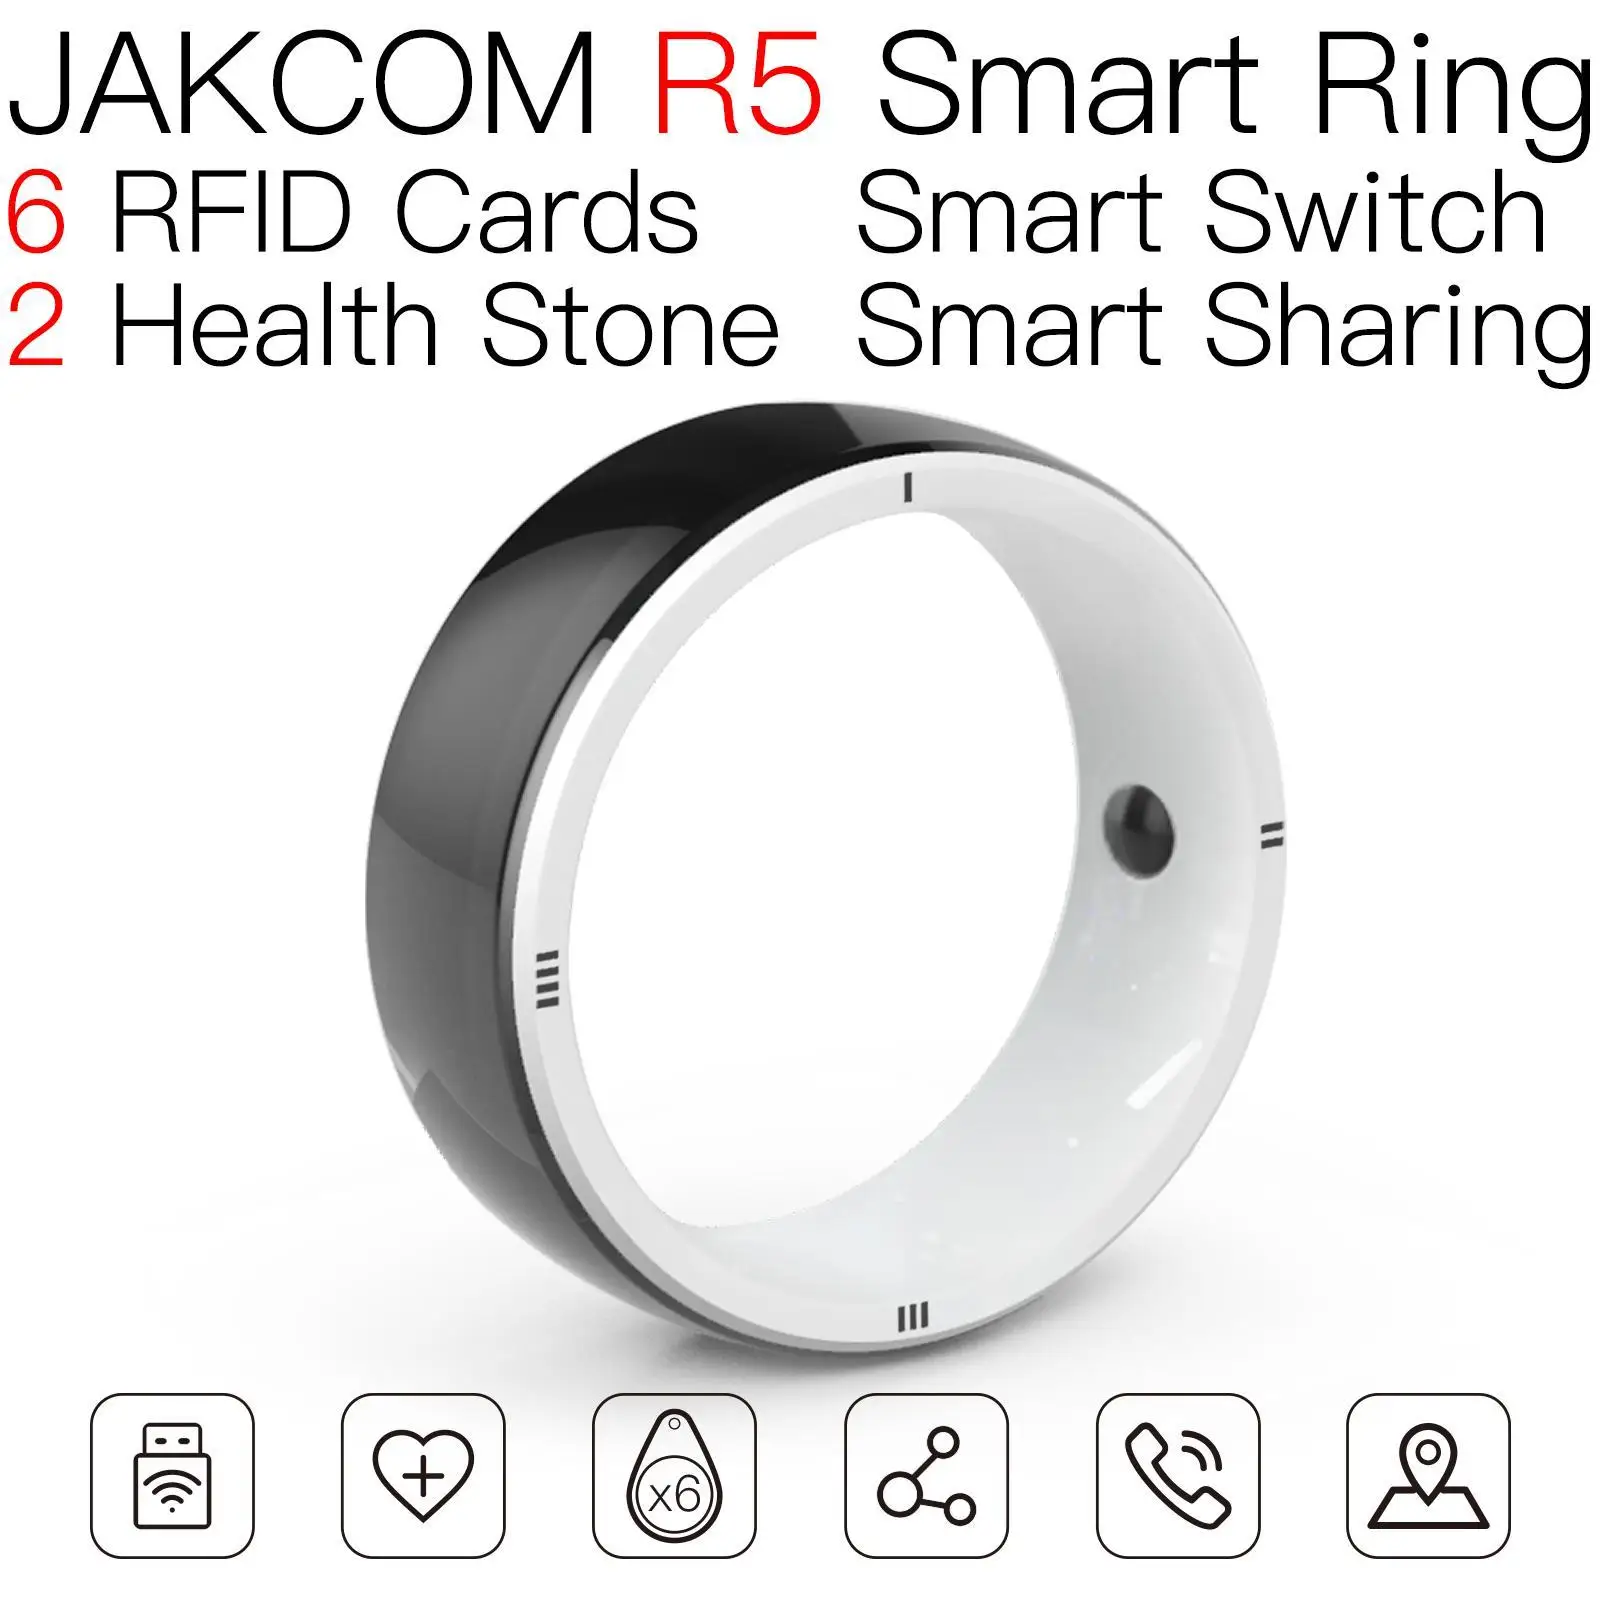 

Умное кольцо JAKCOM R5, красивое, чем фигурка, функциональный браслет saturimetro, смарт-браслет 6 m6 hey plus, мини-часы для телевизора